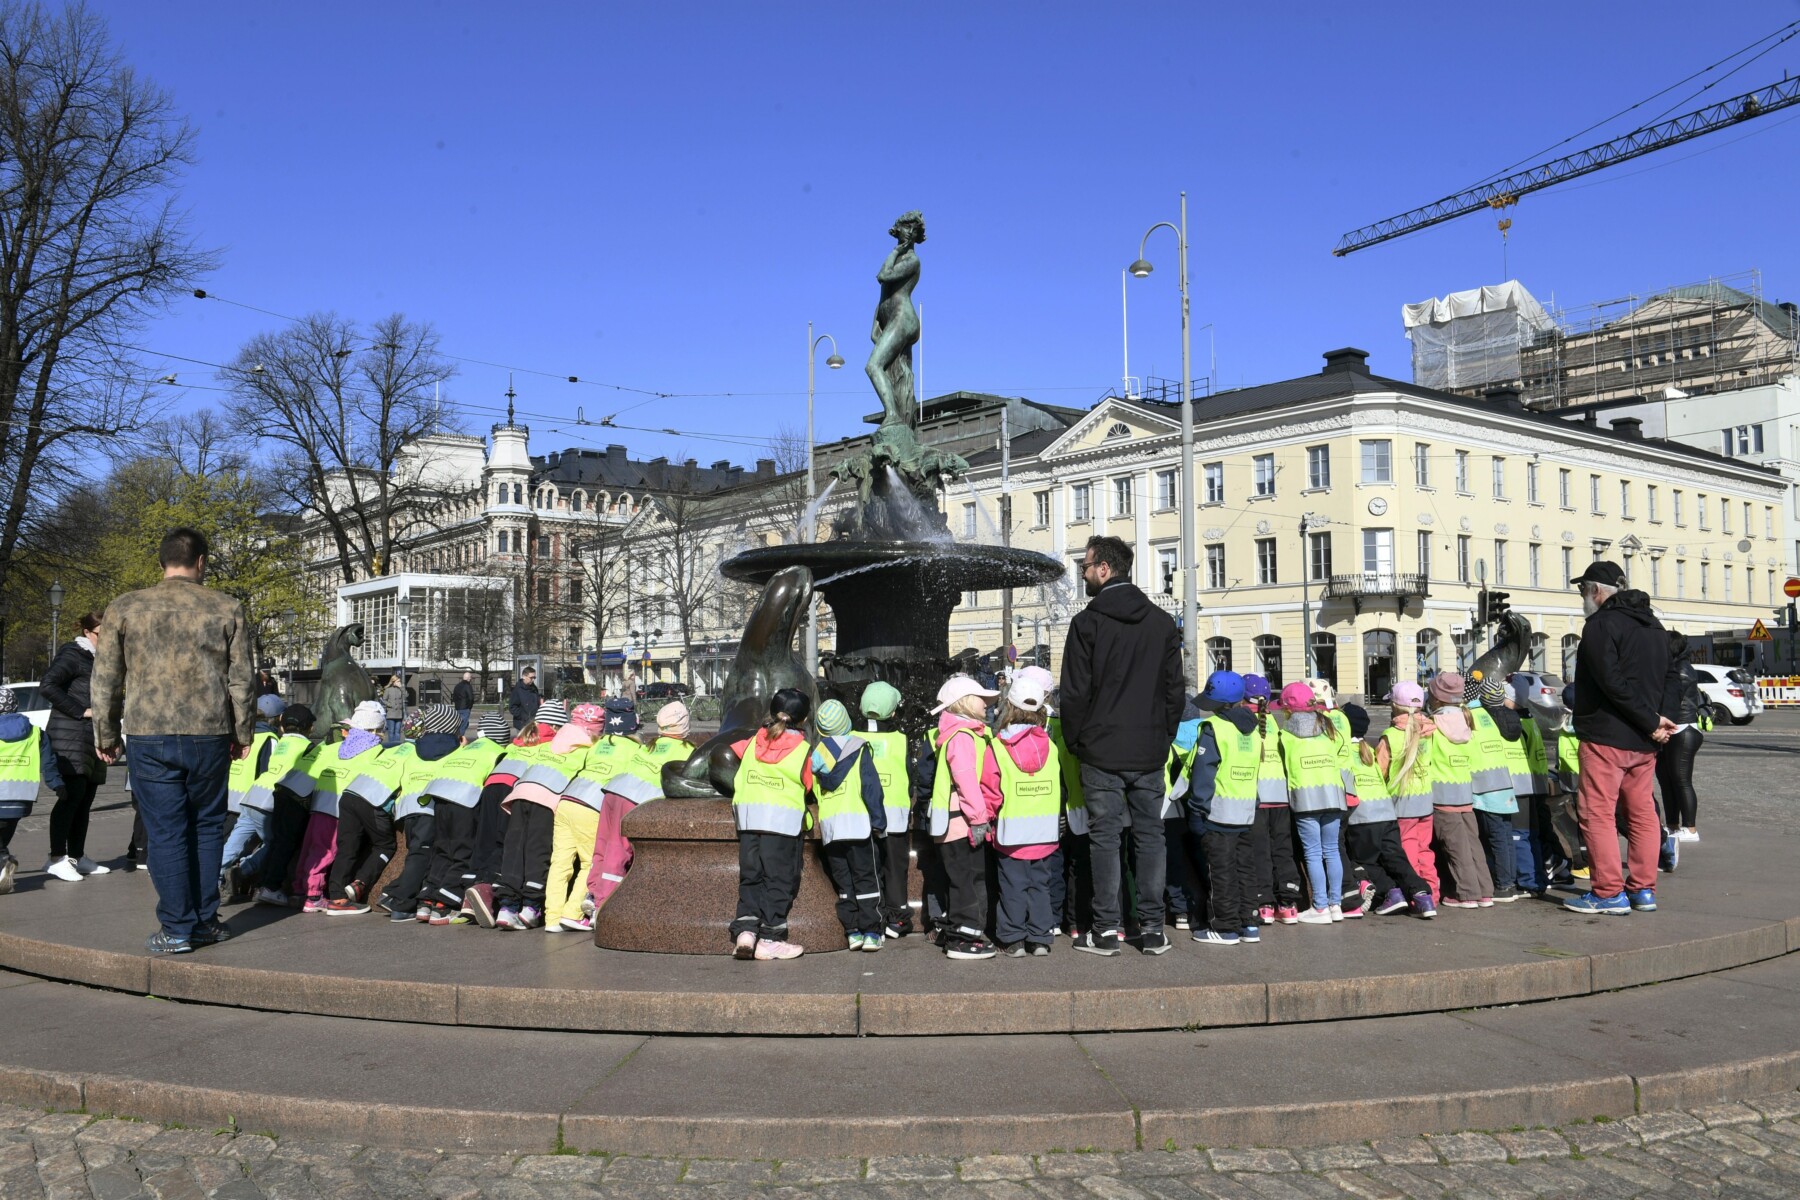 На площади со зданиями на заднем плане несколько десятков детей вместе с учителями собрались вокруг металлической статуи на высоком постаменте.